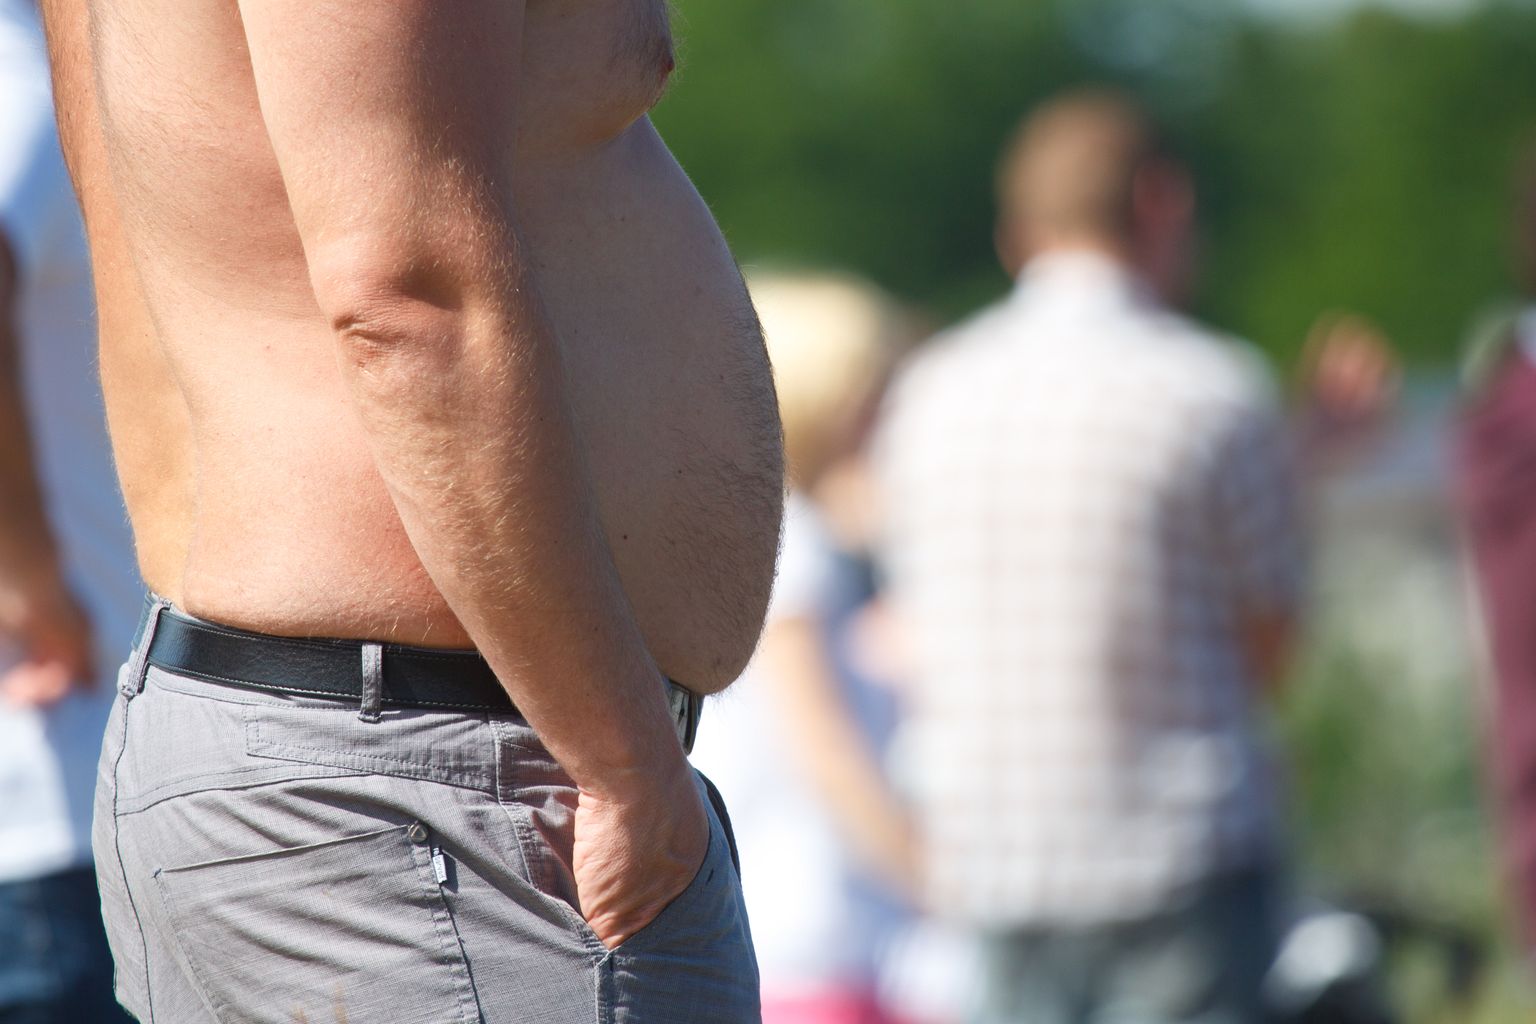 Mees, kehakaal, suur kõht, rasvumine, toitumine

Foto: Arvo Meeks/Valgamaalane